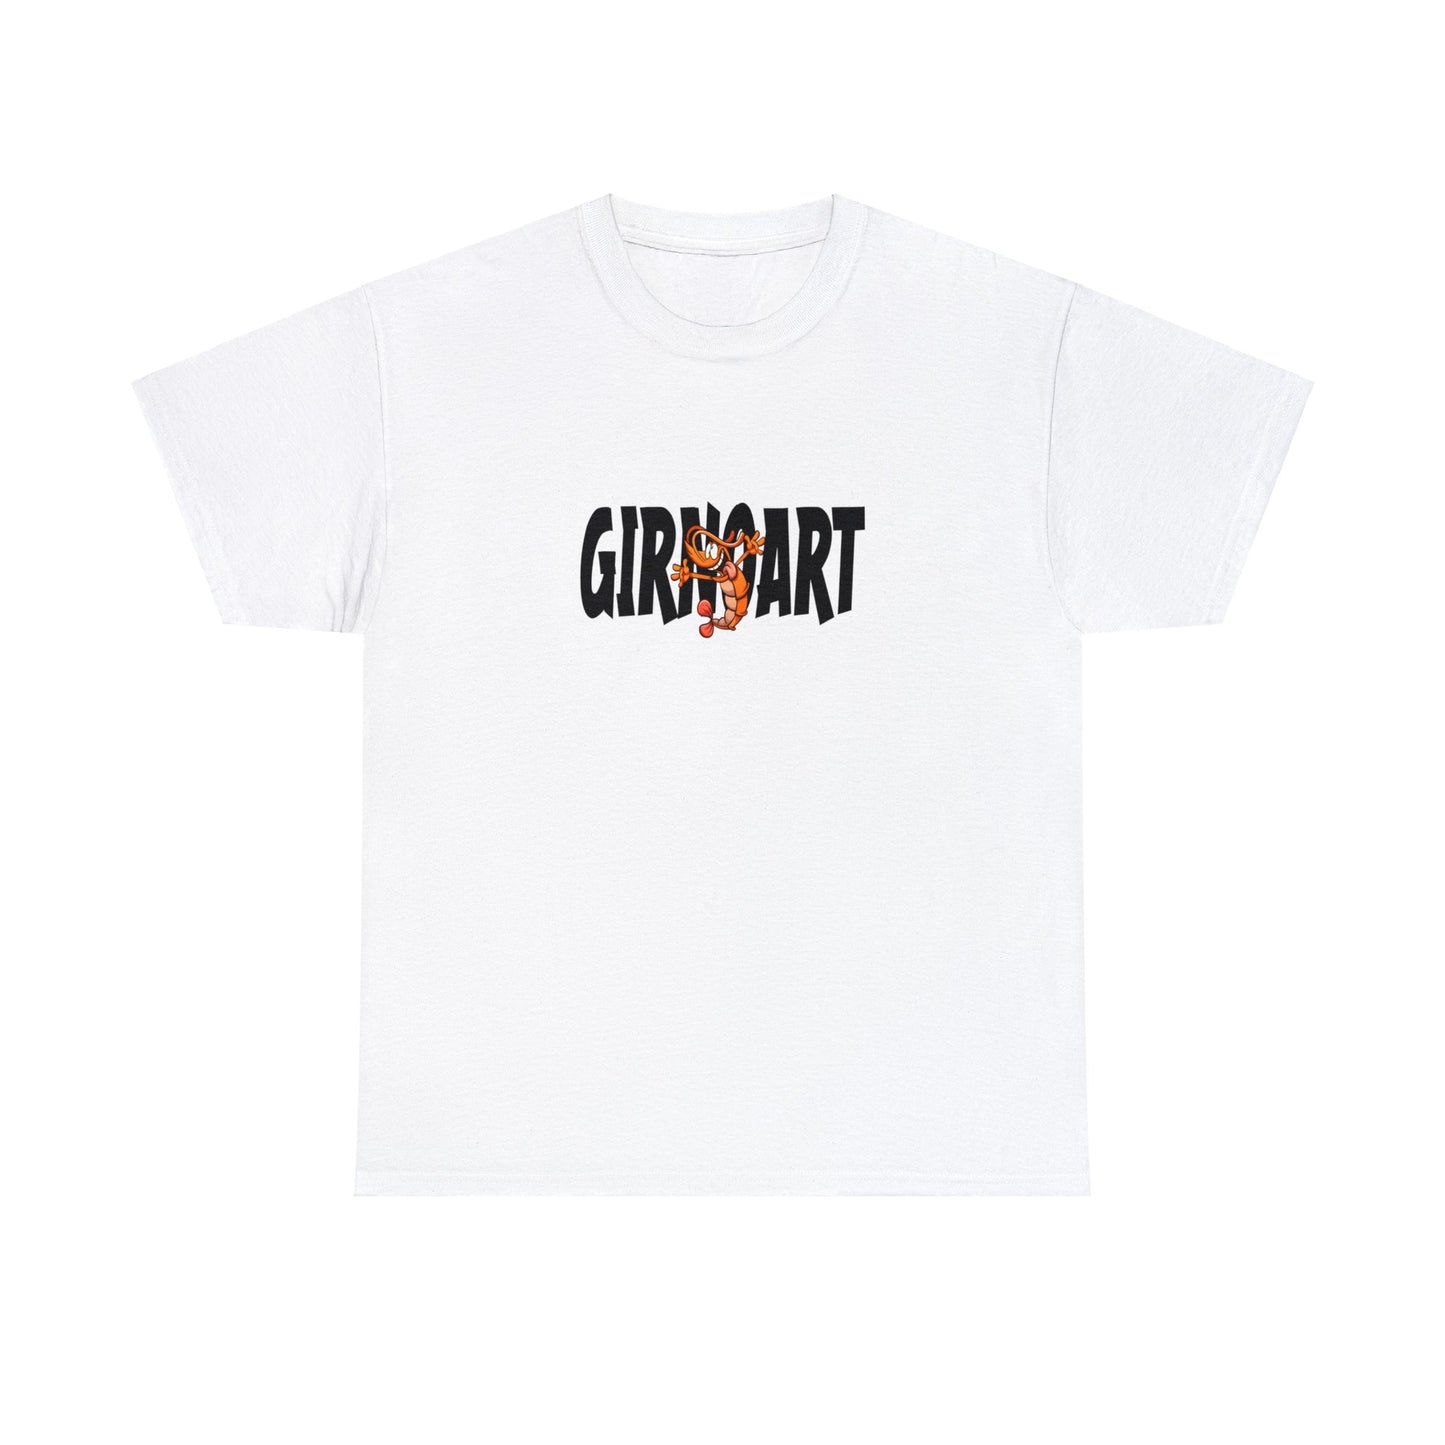 Int Gentsch - Tshirt - Girnoart